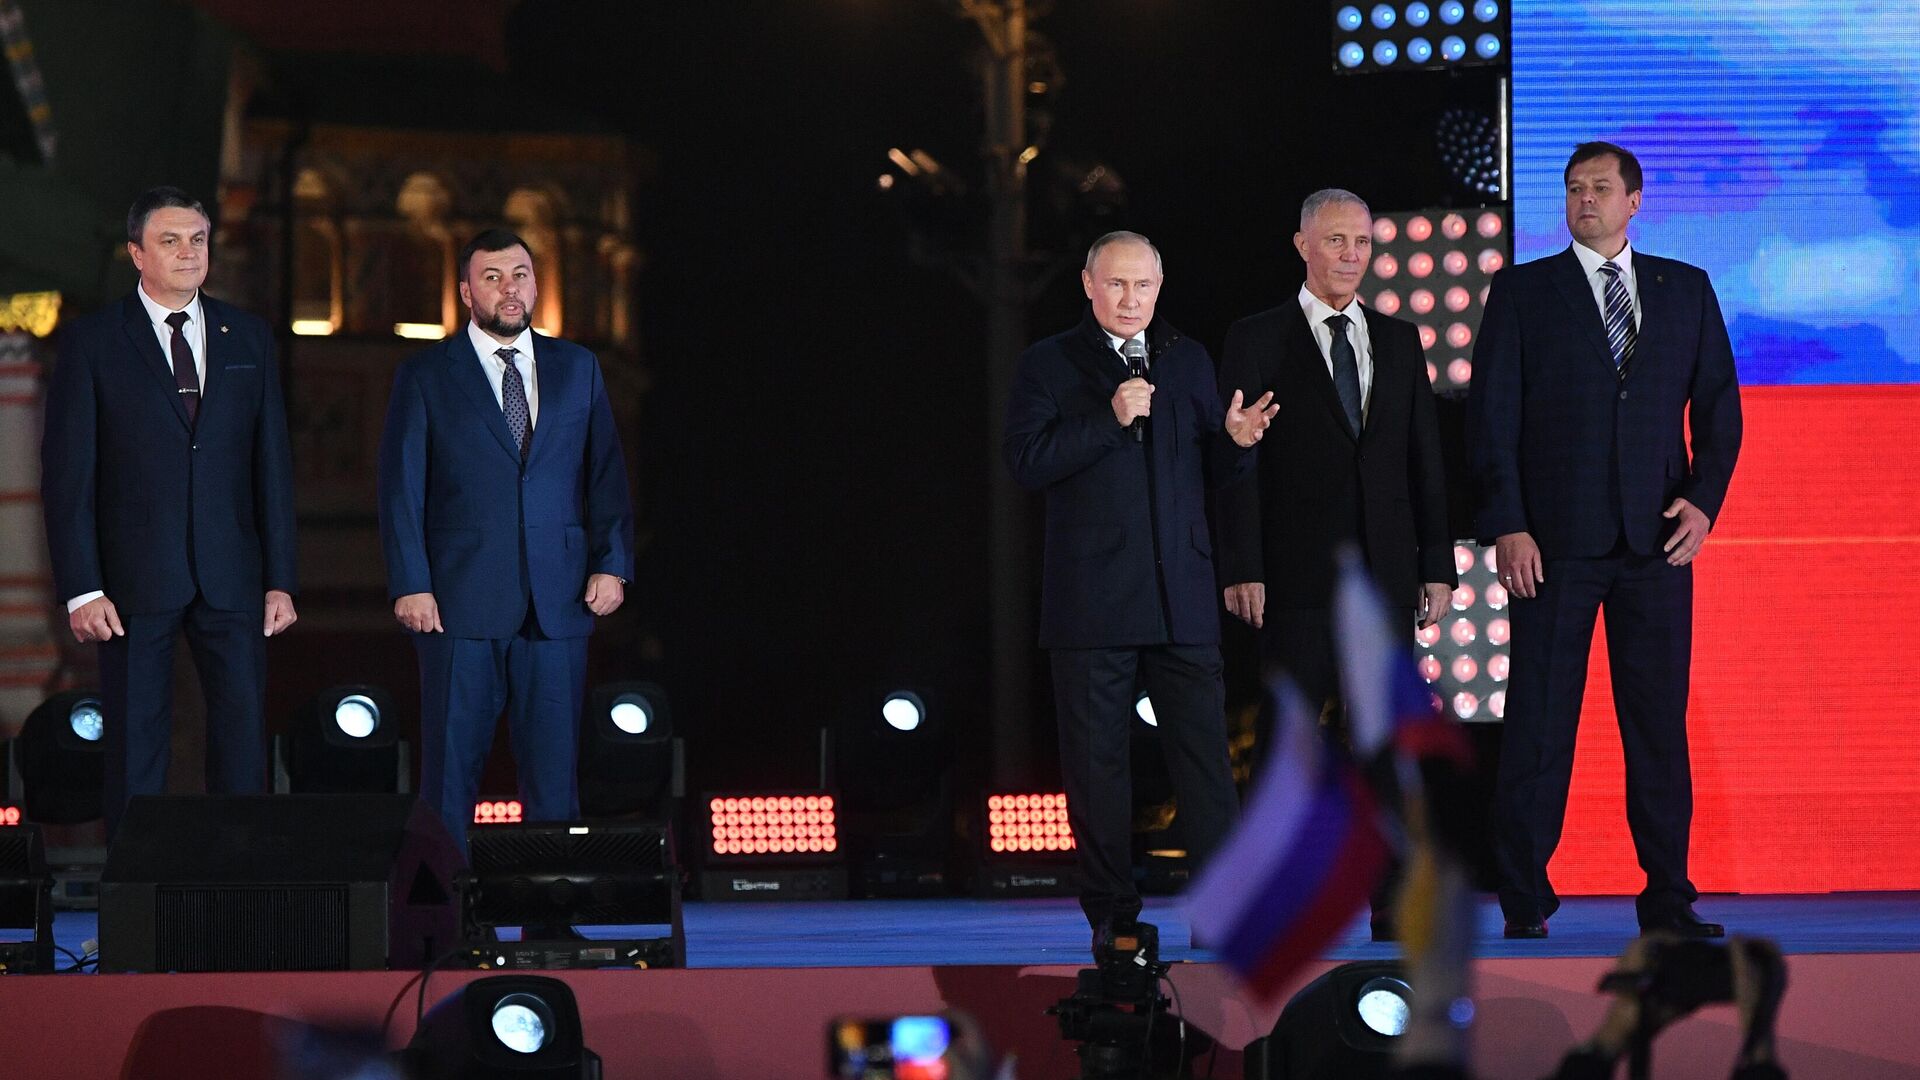 Rusiya prezidenti Vladimir Putin Qızıl Meydanda keçirilən mitinq-konsertdə iştirak edib - Sputnik Azərbaycan, 1920, 30.09.2022